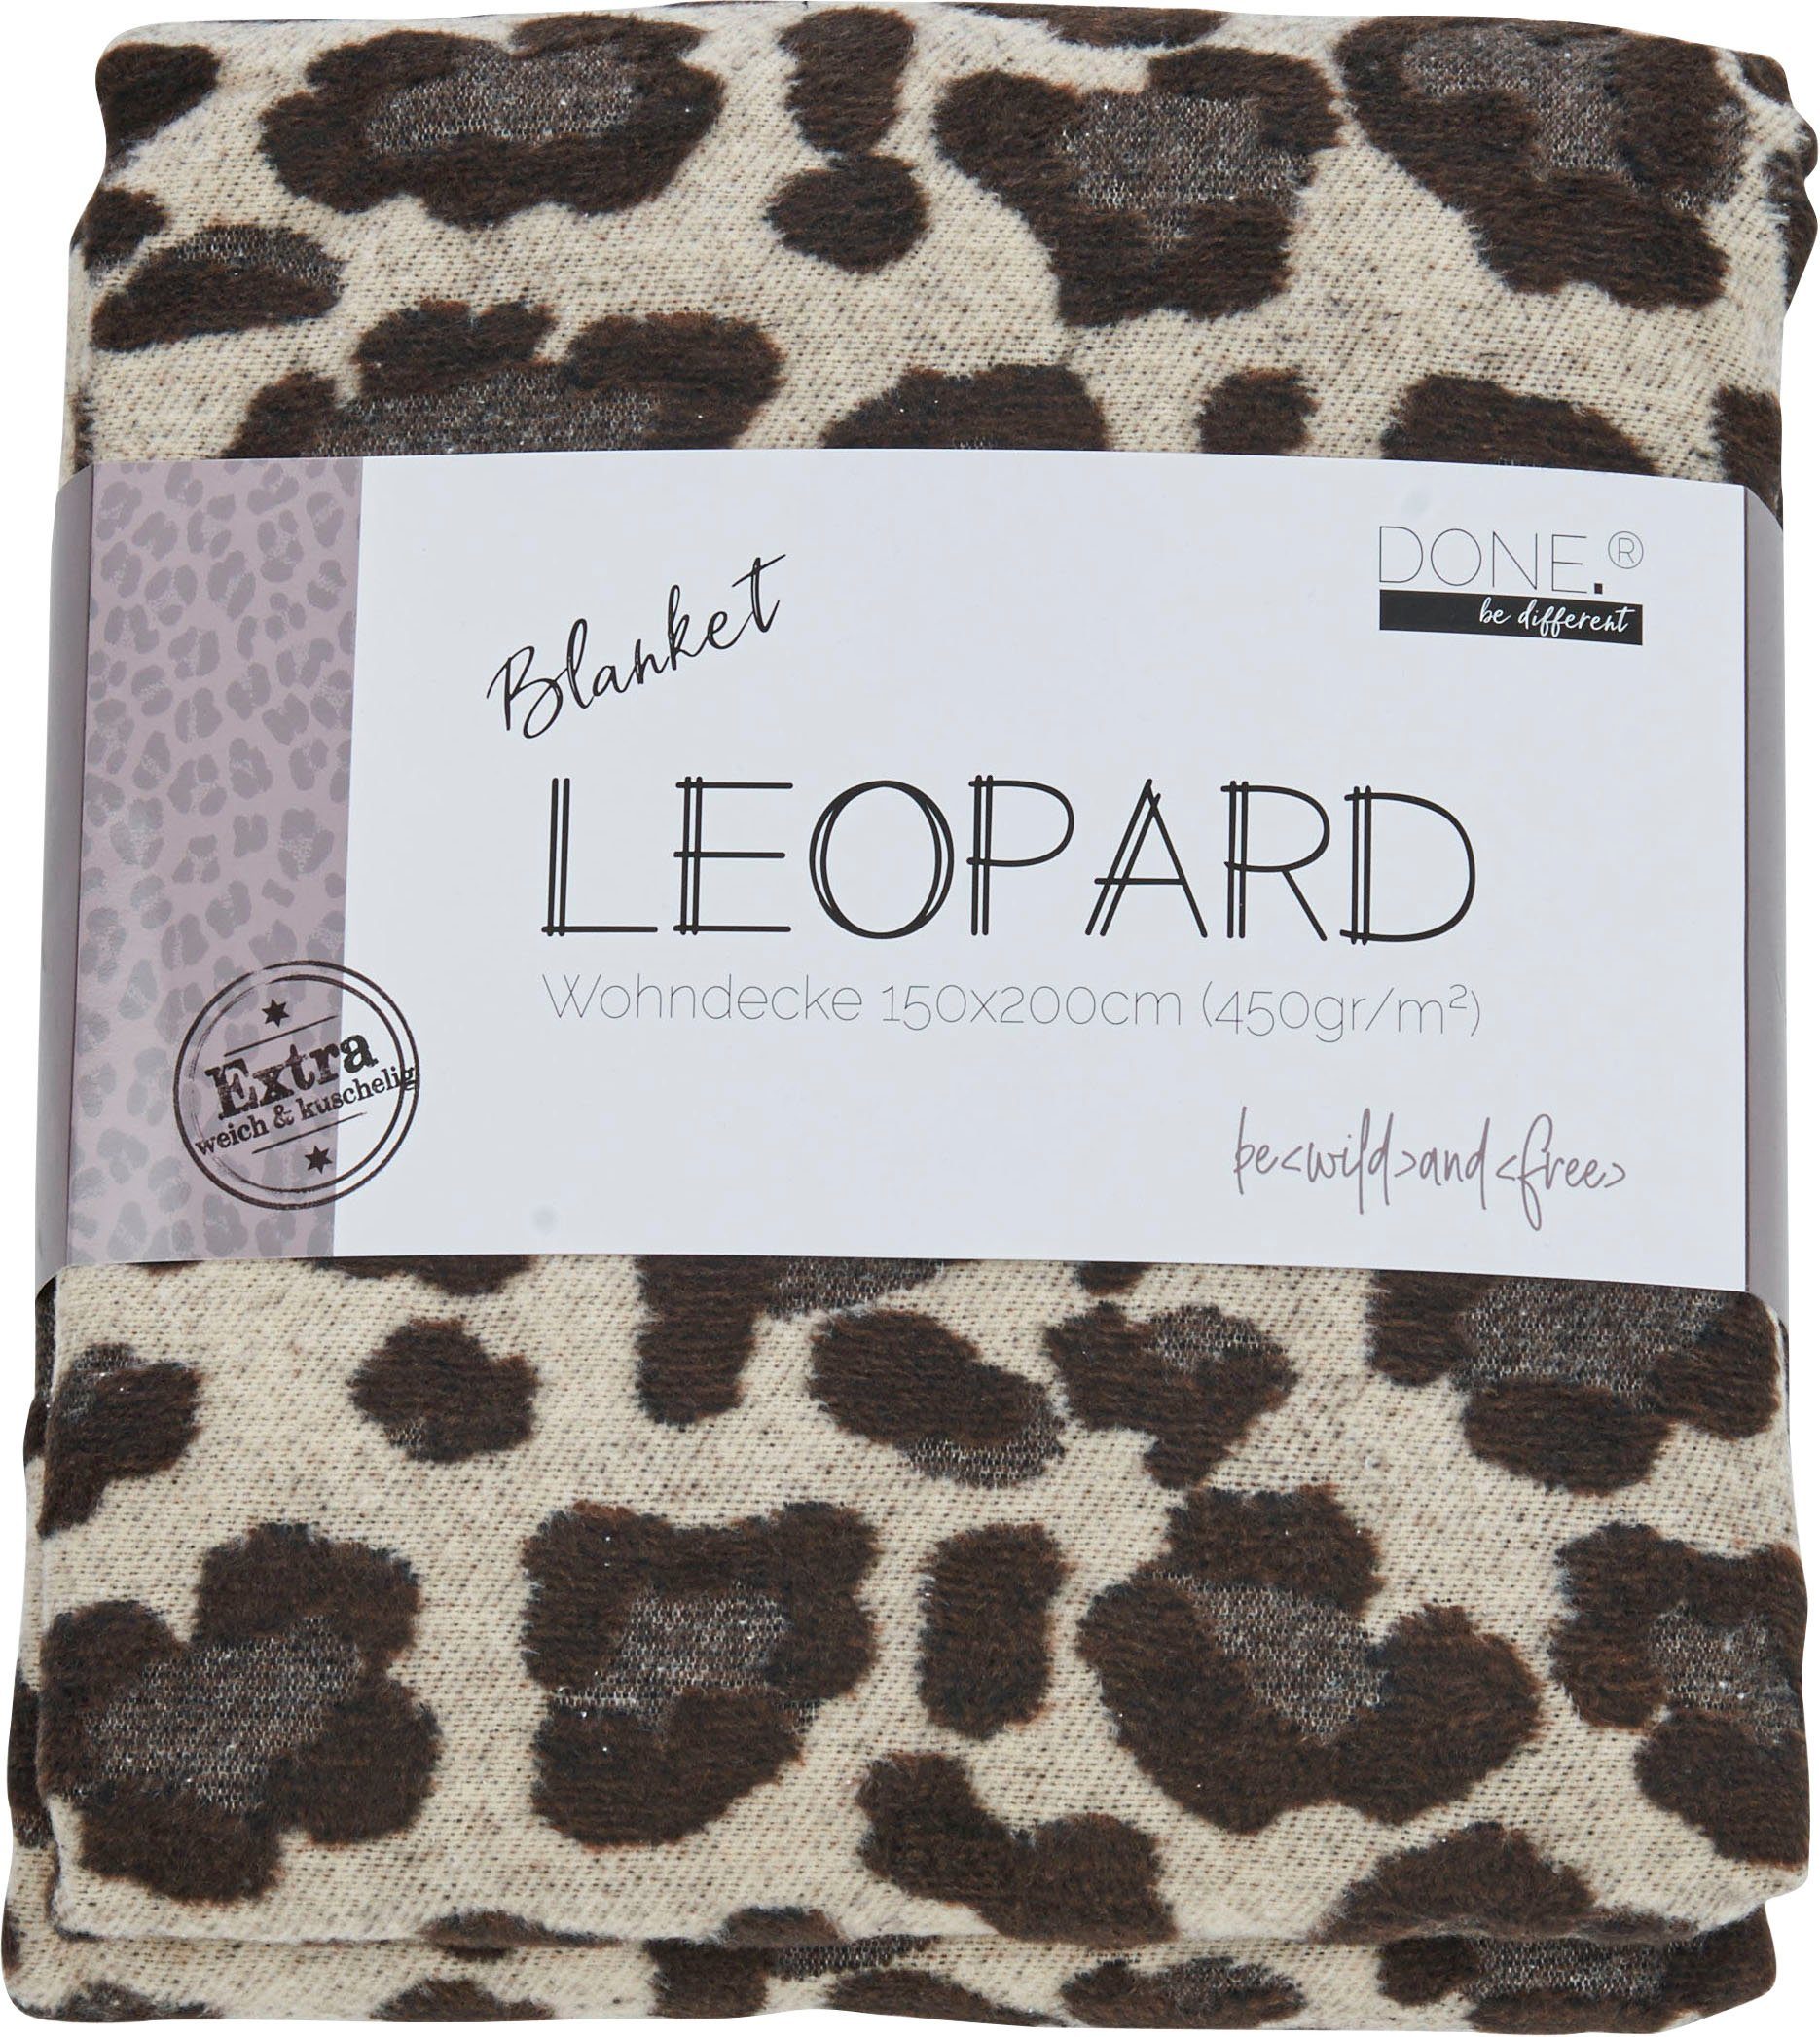 Leo-Look, im Kuscheldecke Leopard, Wohndecke Ziernaht mit done.®, einfassender Wohndecke